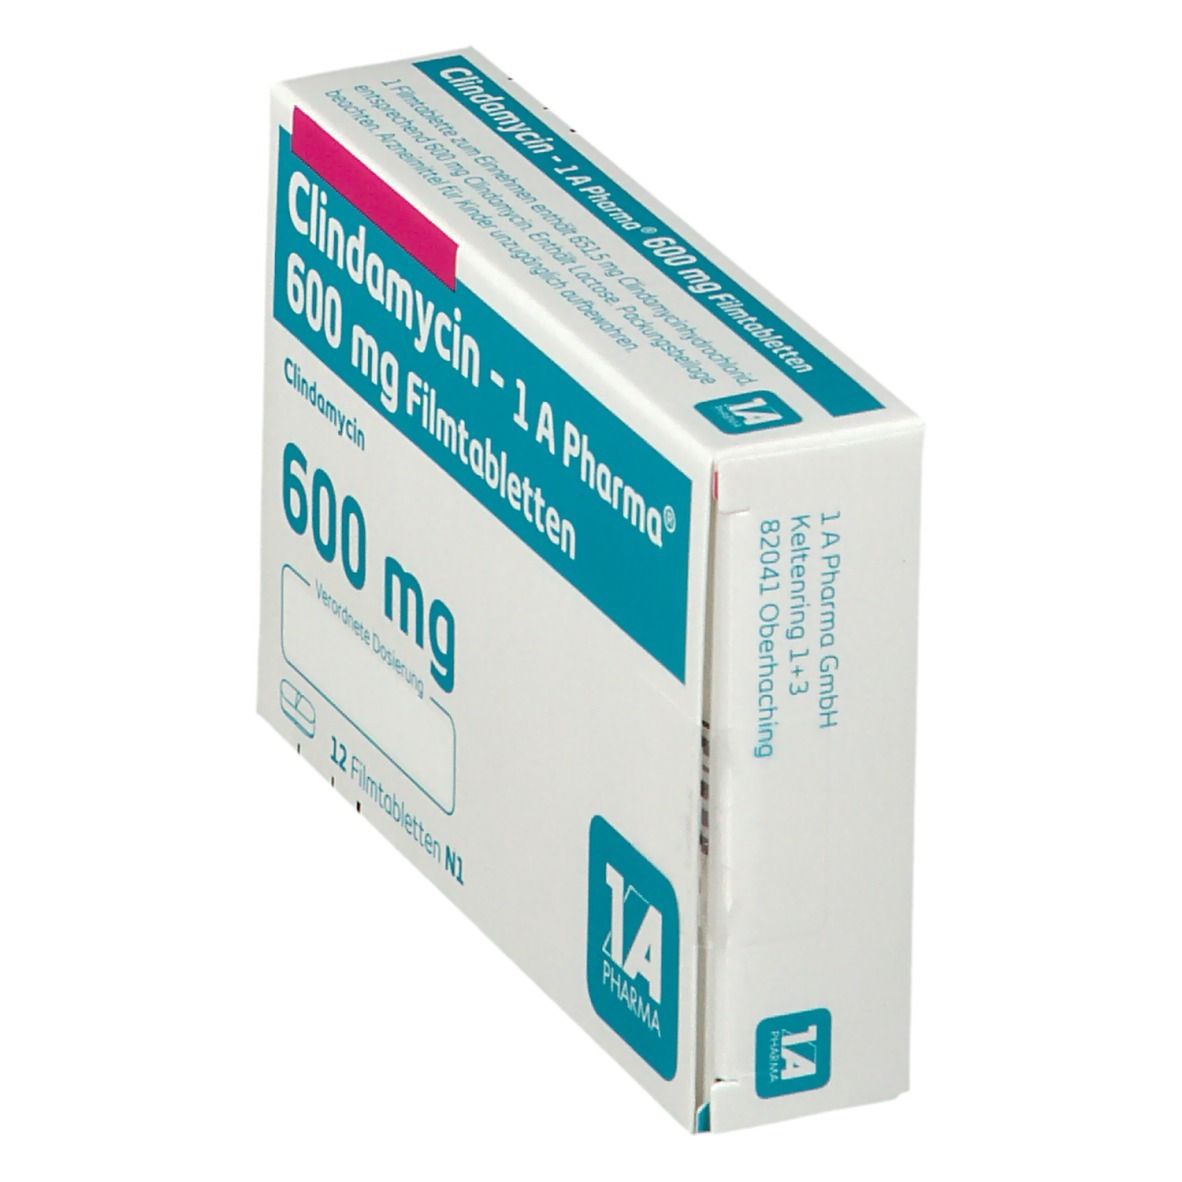 Clindamycin 1A Pharma®600Mg